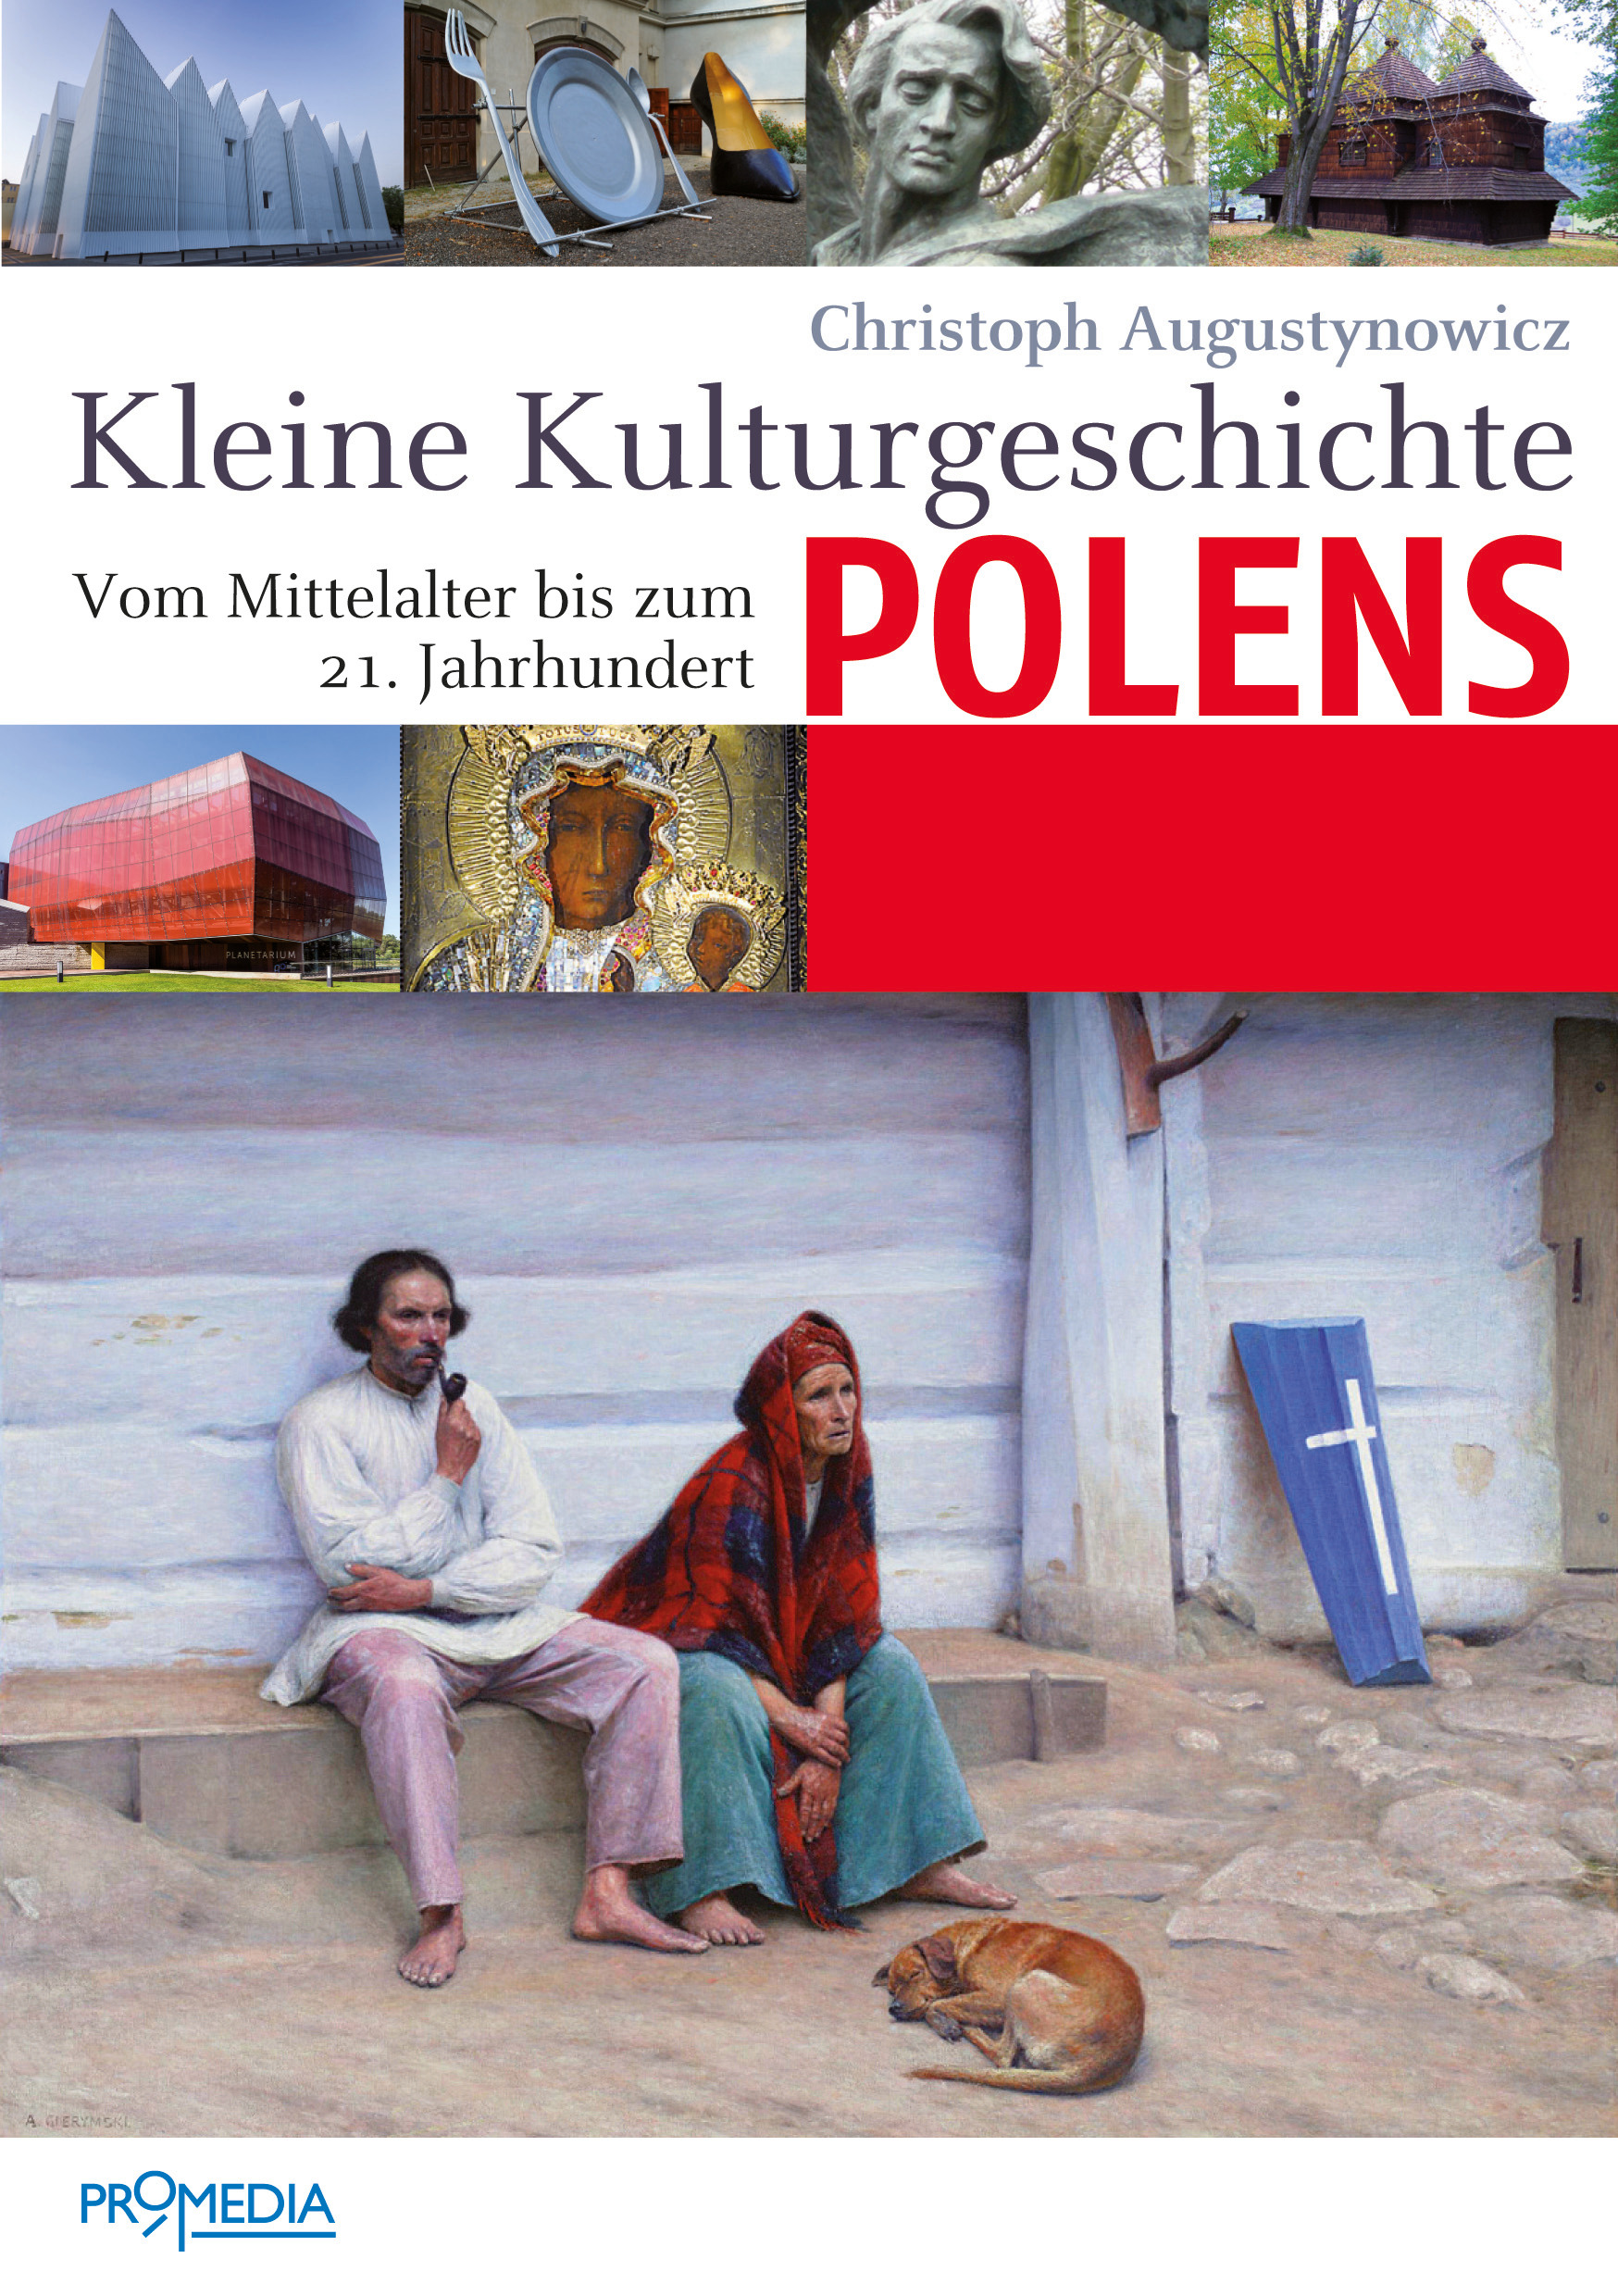 [Cover] Kleine Kulturgeschichte Polens